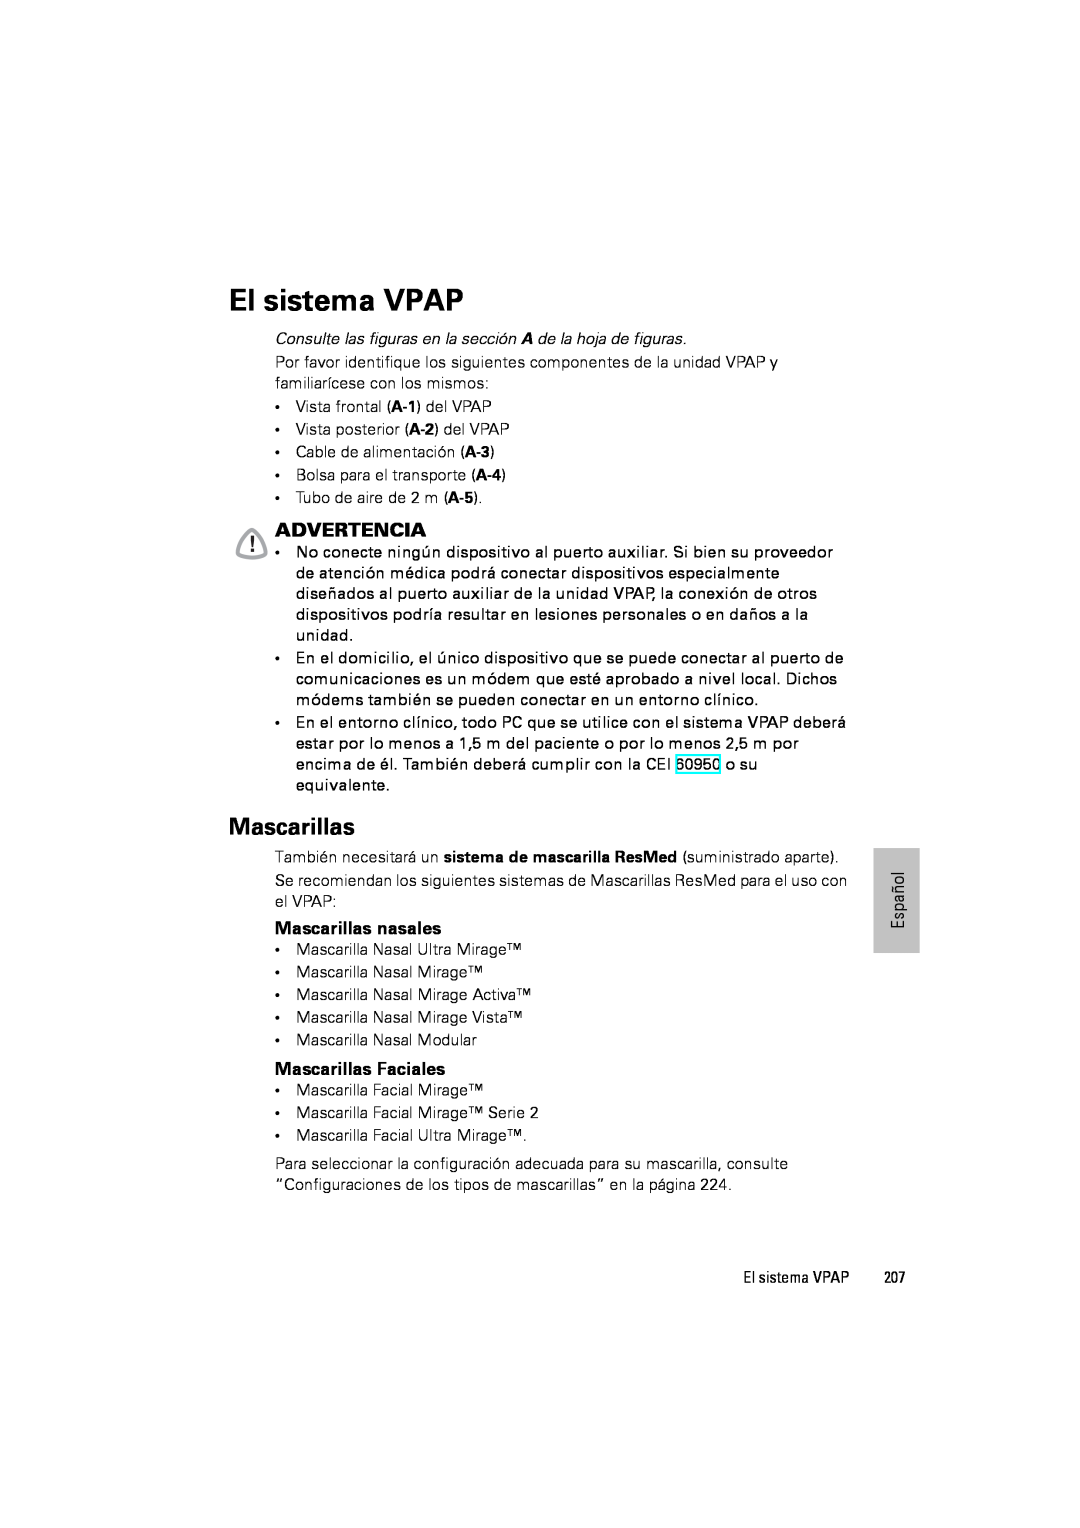 ResMed III & III ST user manual El sistema VPAP, Advertencia, Mascarillas nasales, Mascarillas Faciales 